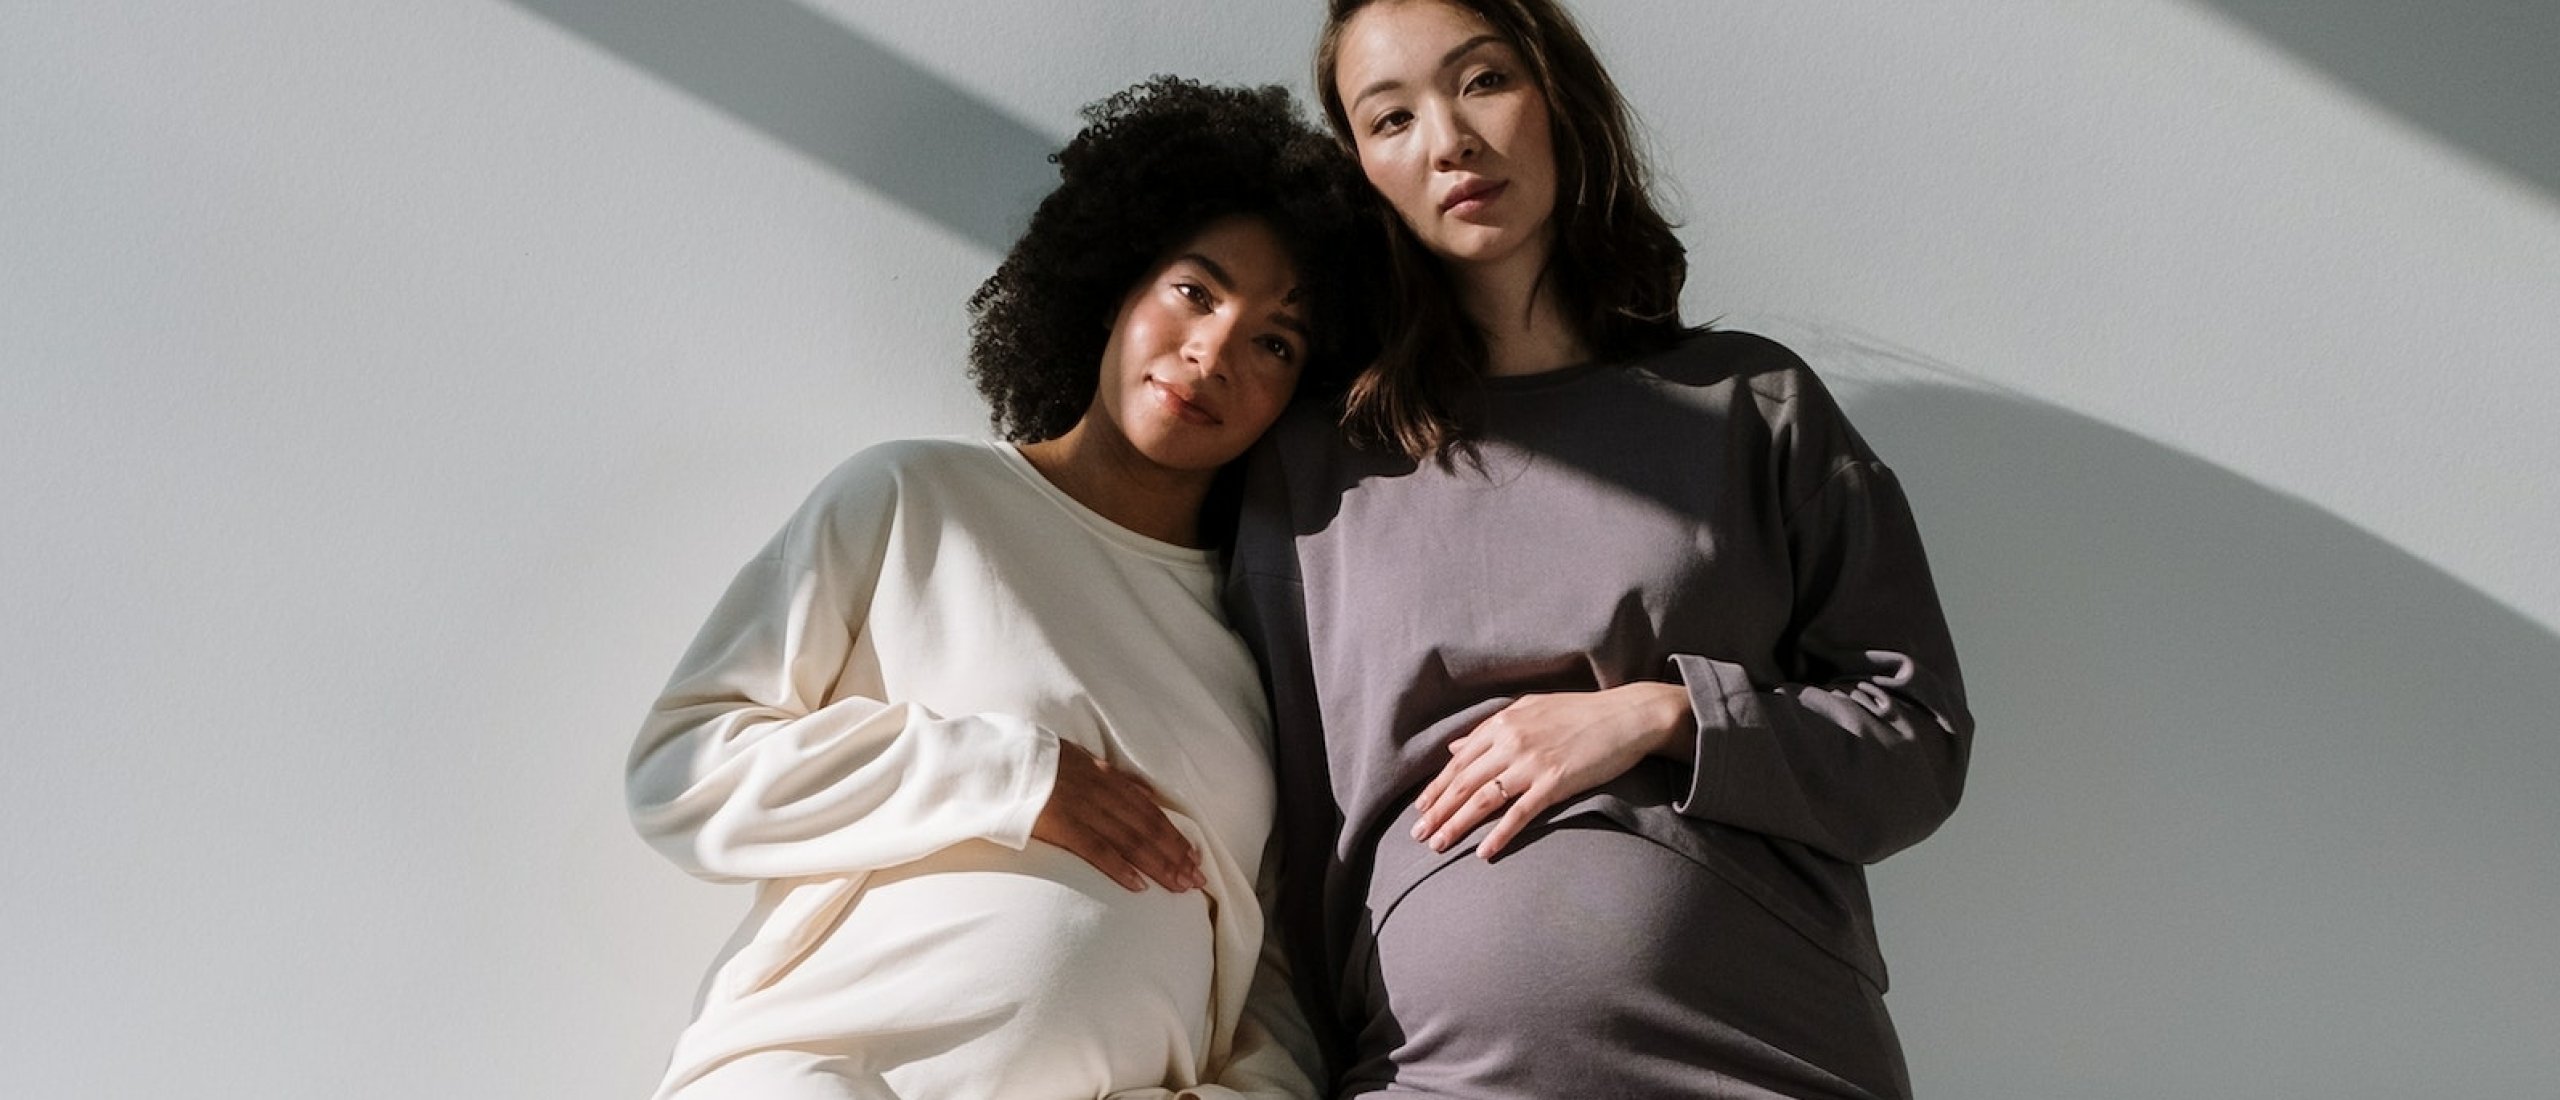 Zwangerschapsdiscriminatie op de werkvloer: wat kun je doen?